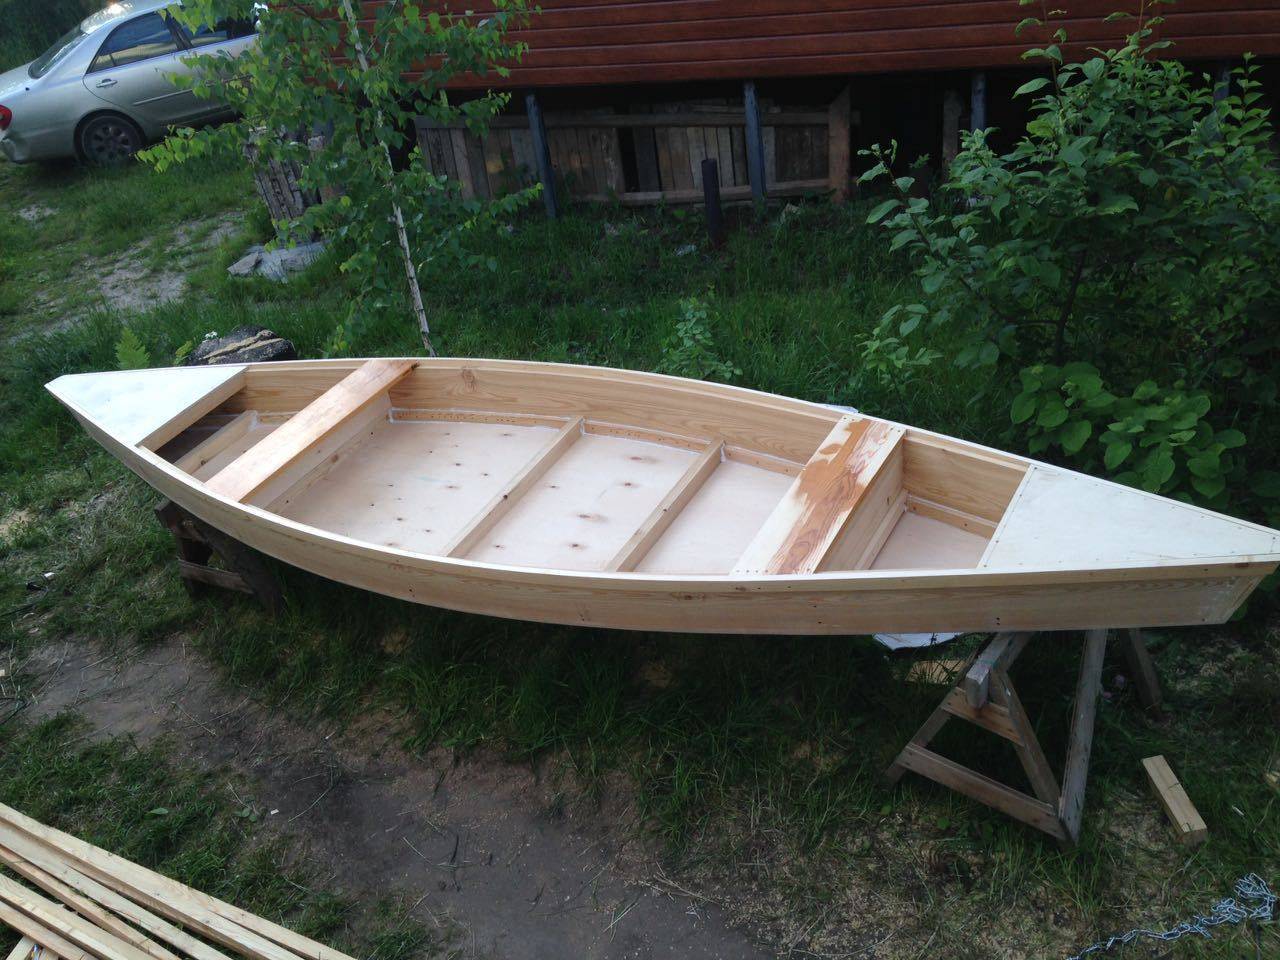 Как сделать деревянную лодку: инструкция с чертежами - строительство дома, ремонт в квартире, все для дачи - nashakrepost.ru.